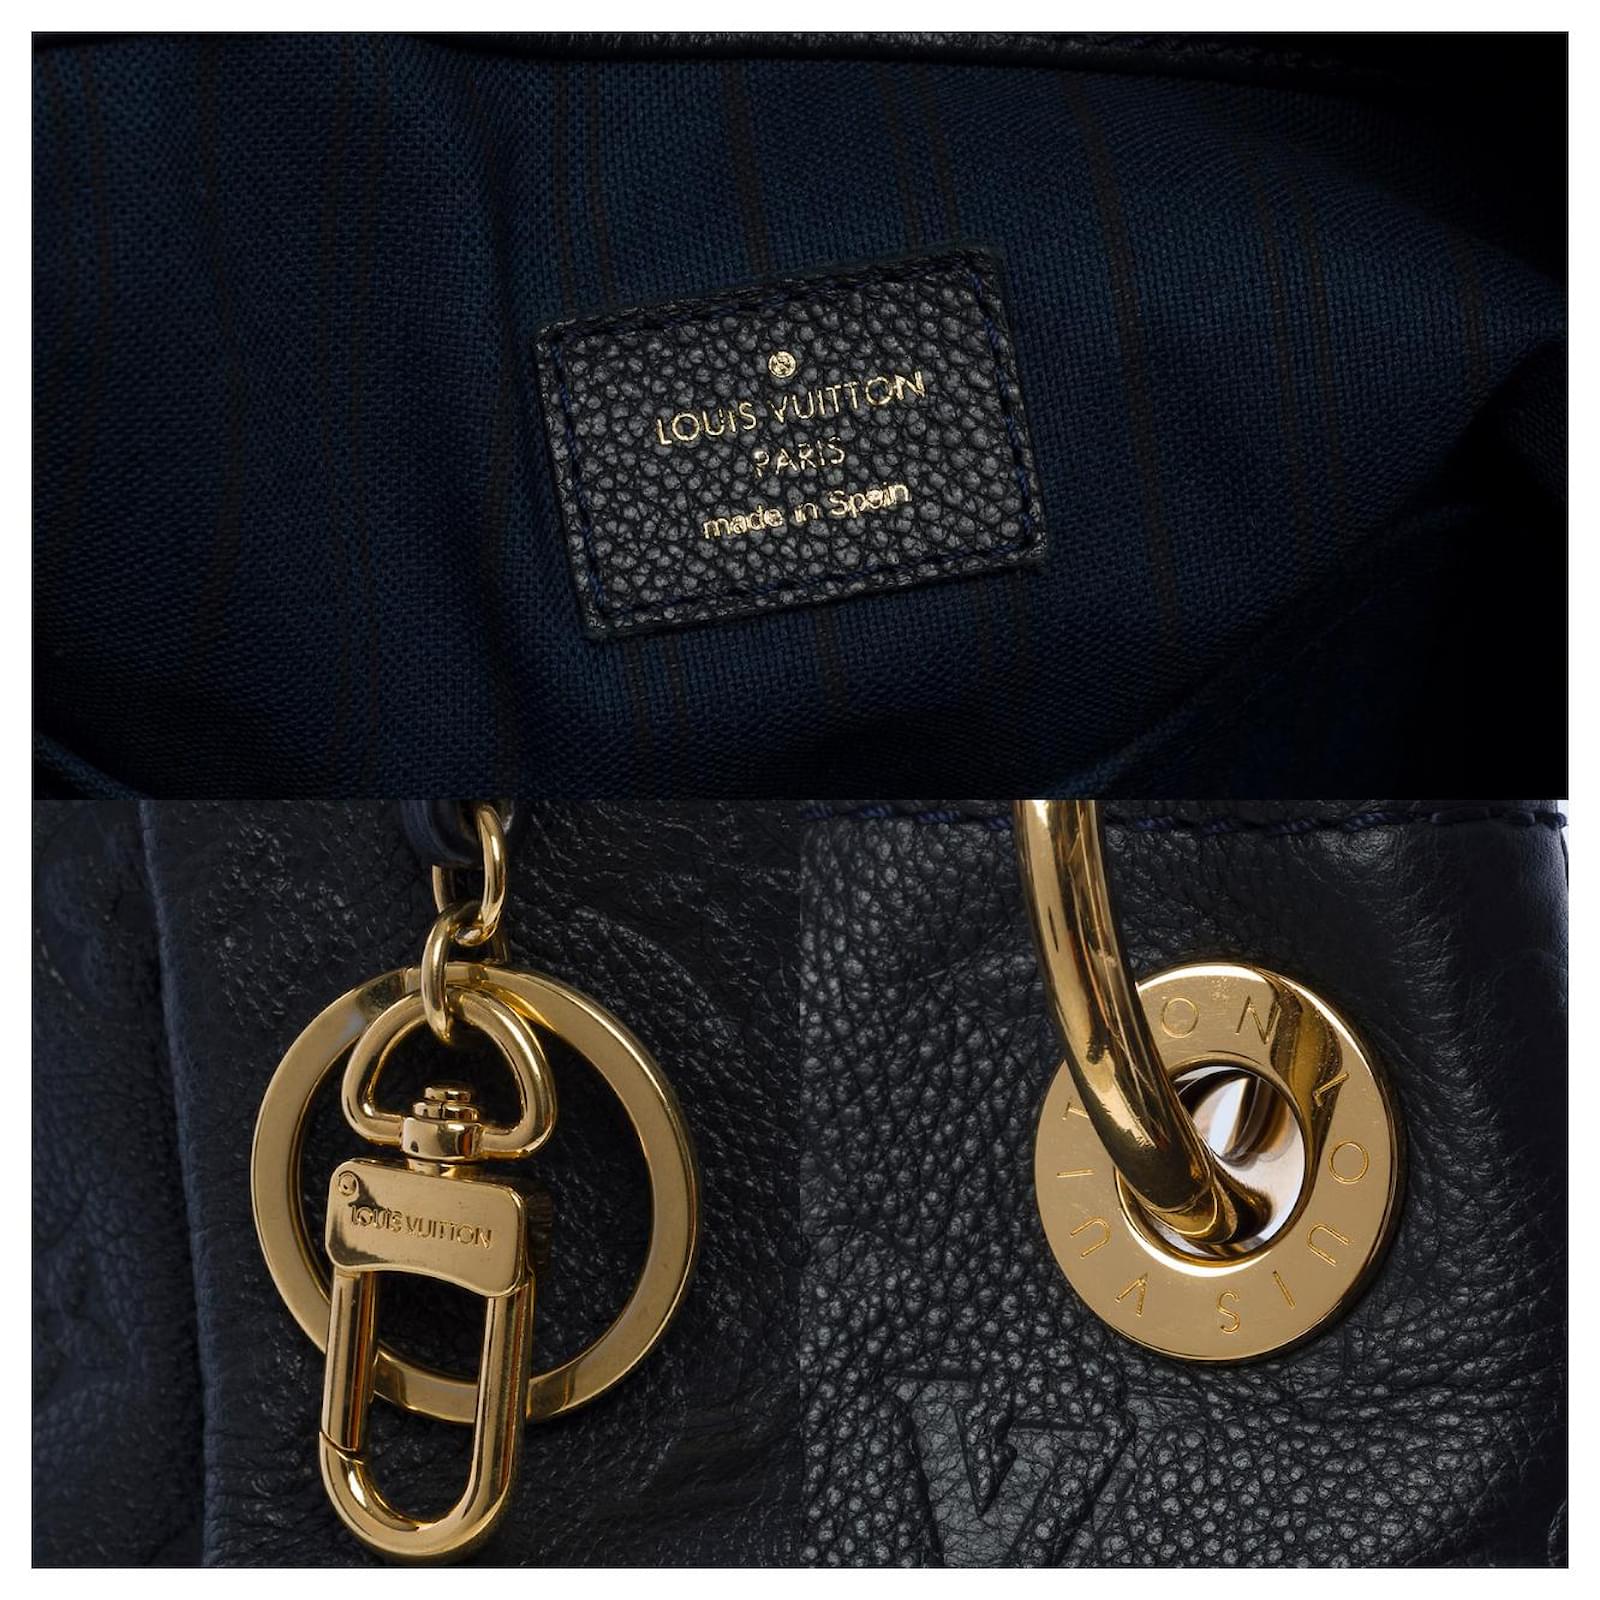 Louis Vuitton artsy handbag in midnight blue embossed